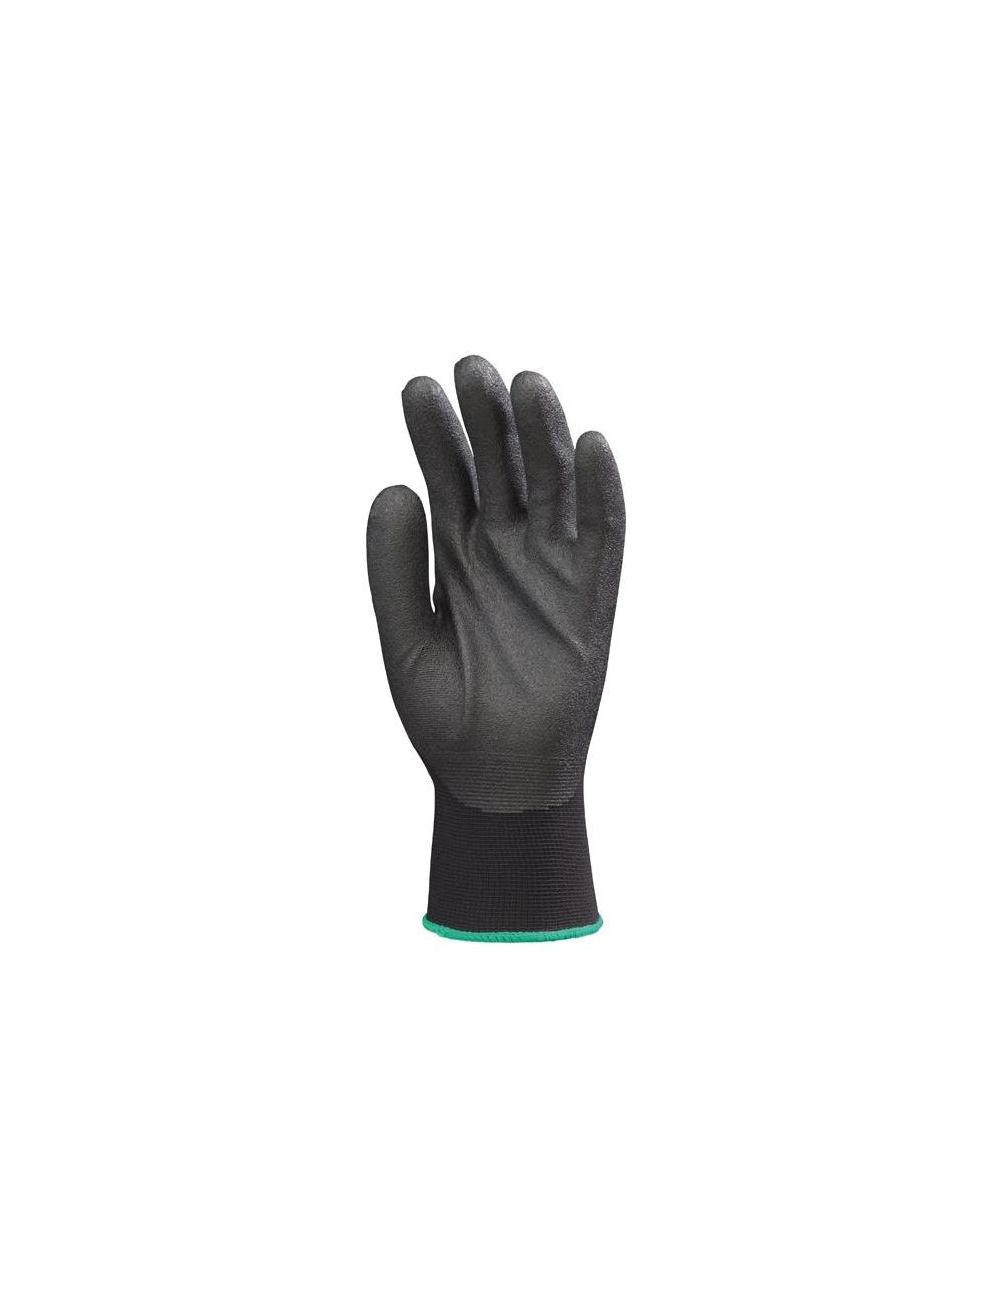 Gants Hydropellent TM polyester noir enduit mousse PVC noir